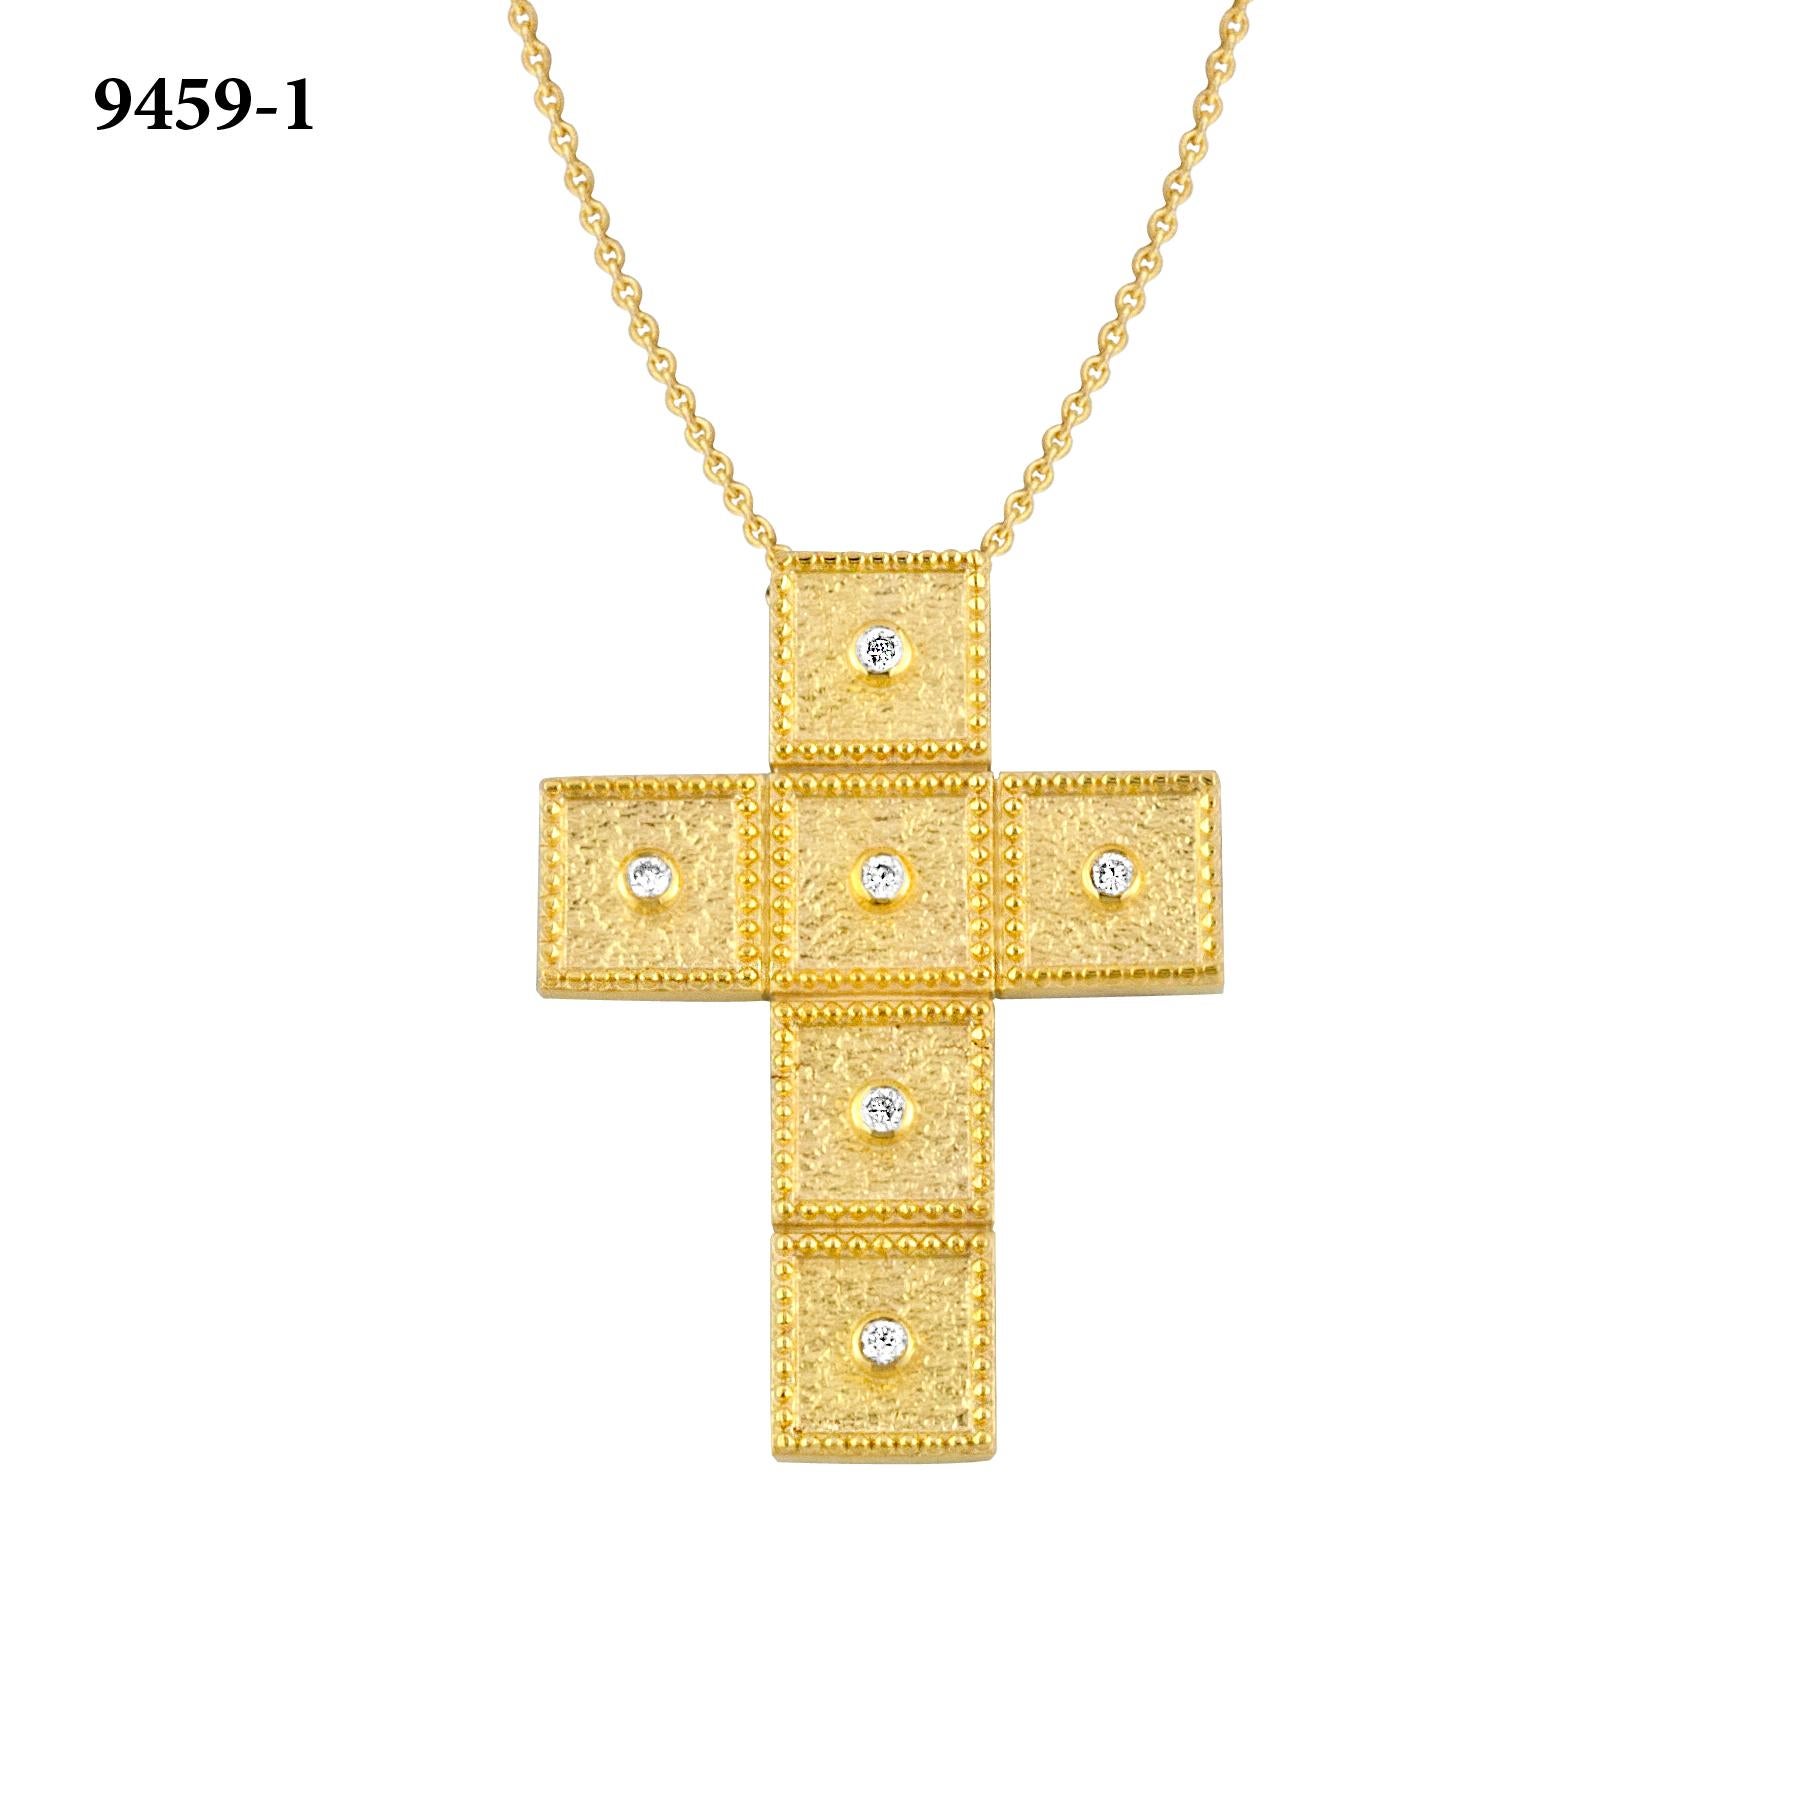 Dieses S.Georgios-Kreuz ist aus massivem 18-karätigem Gelbgold handgefertigt und mikroskopisch genau mit Granulationen verziert. Der Hintergrund dieses wunderschönen Kreuzes hat einen einzigartigen Samt-Look und verfügt über 6 Brillantschliff